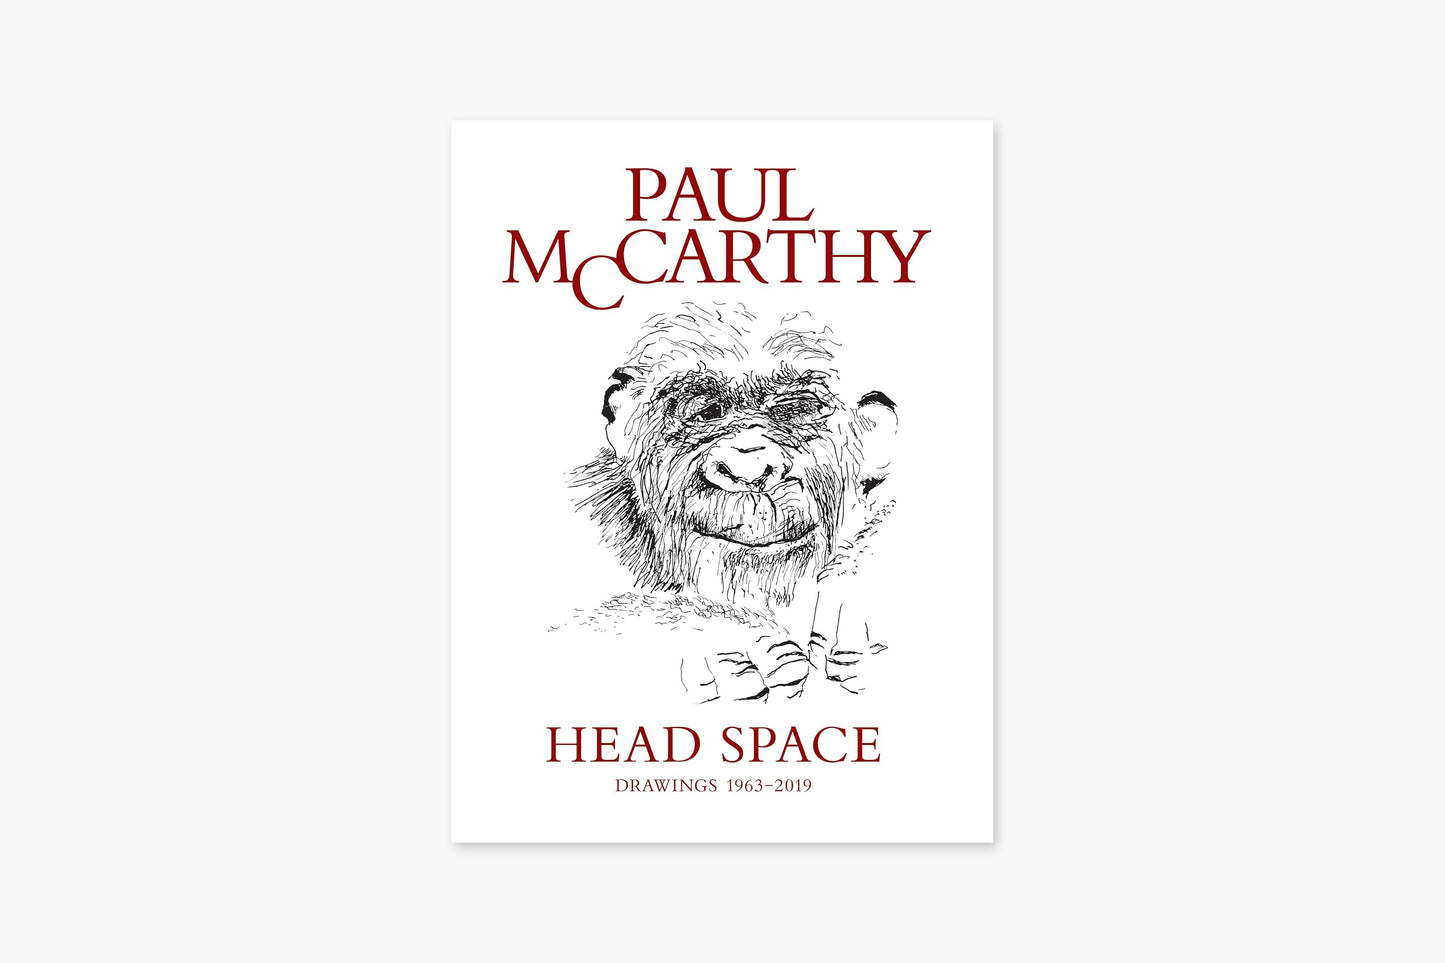 Head Space, Drawings 1963-2019